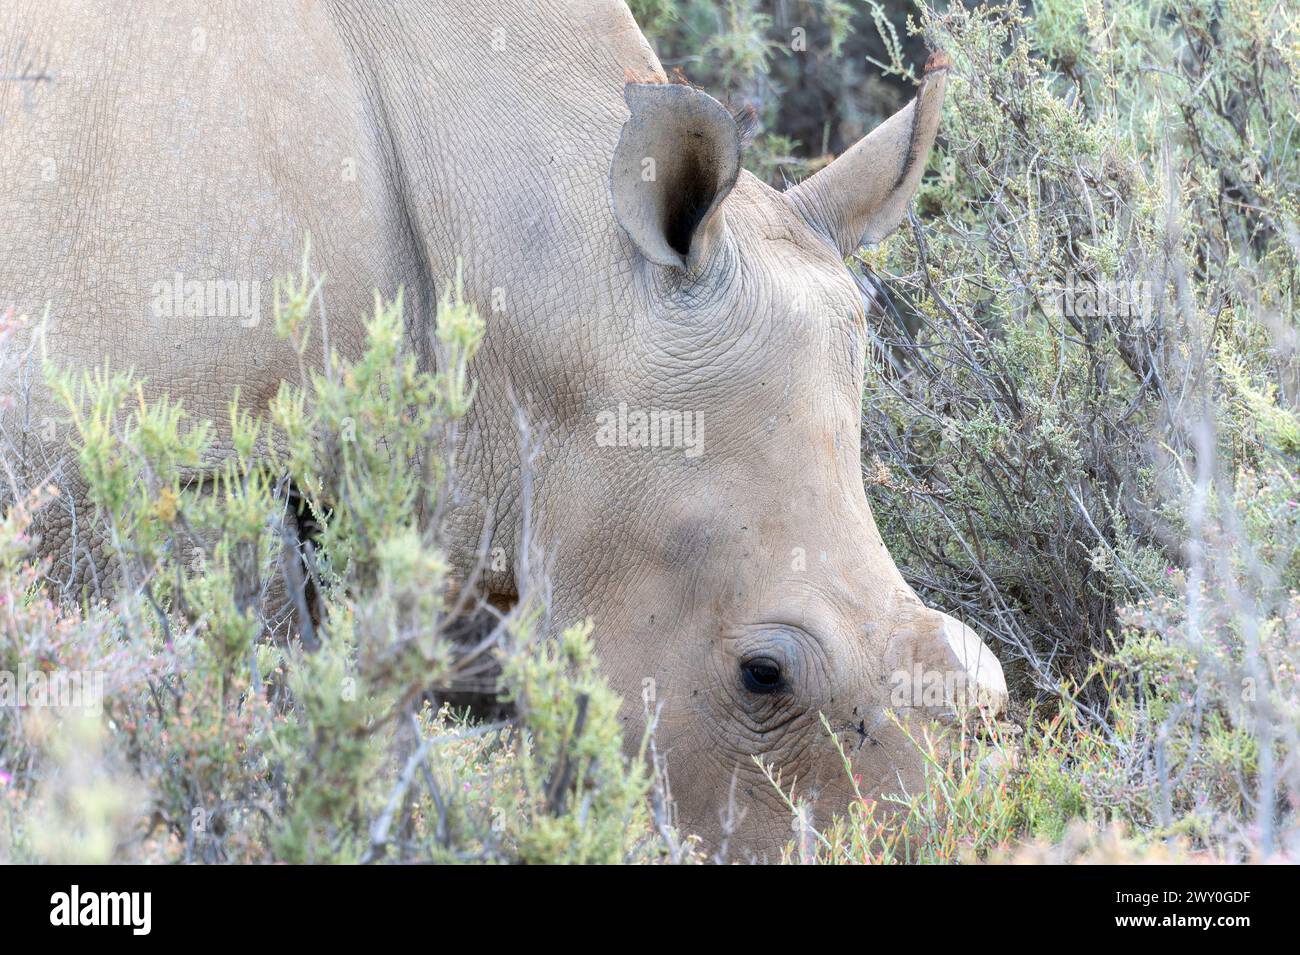 Un rhinocéros blanc du Sud, Ceratotherium simum ssp. Simum, écorné pour la protection, pèle sur l'herbe dans un champ en Afrique du Sud. Banque D'Images